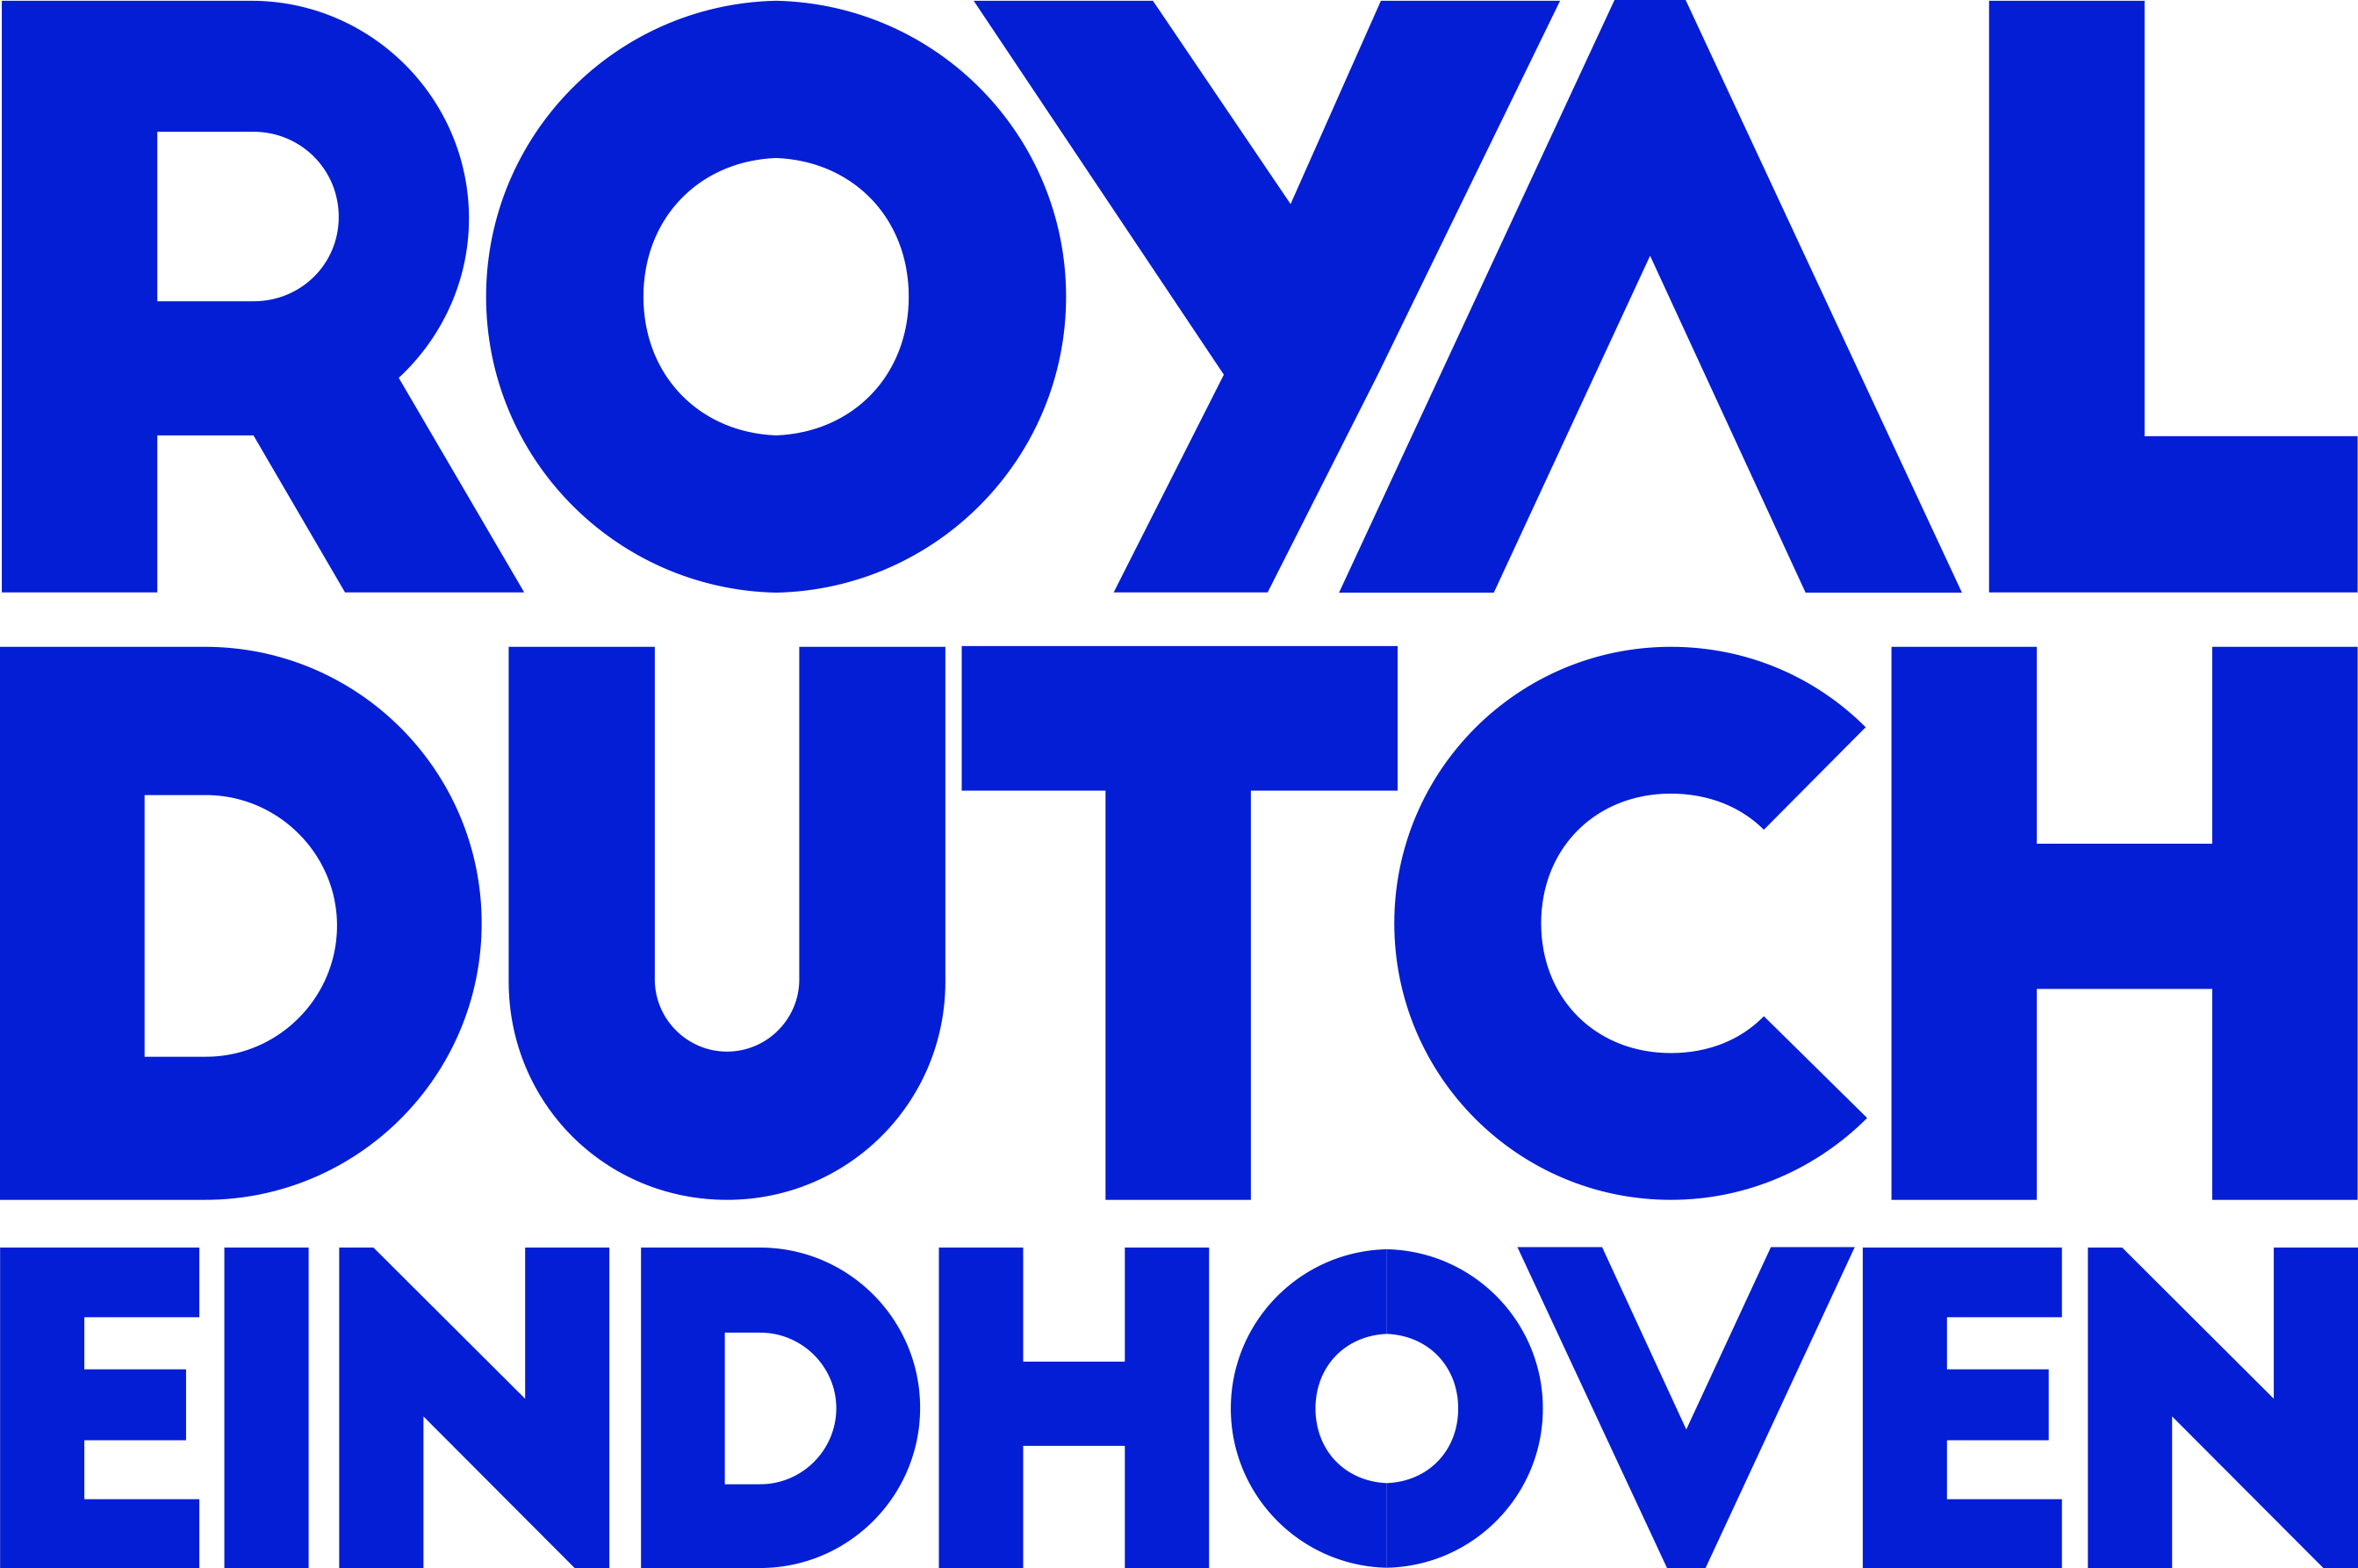 Royal Dutch Eindhoven